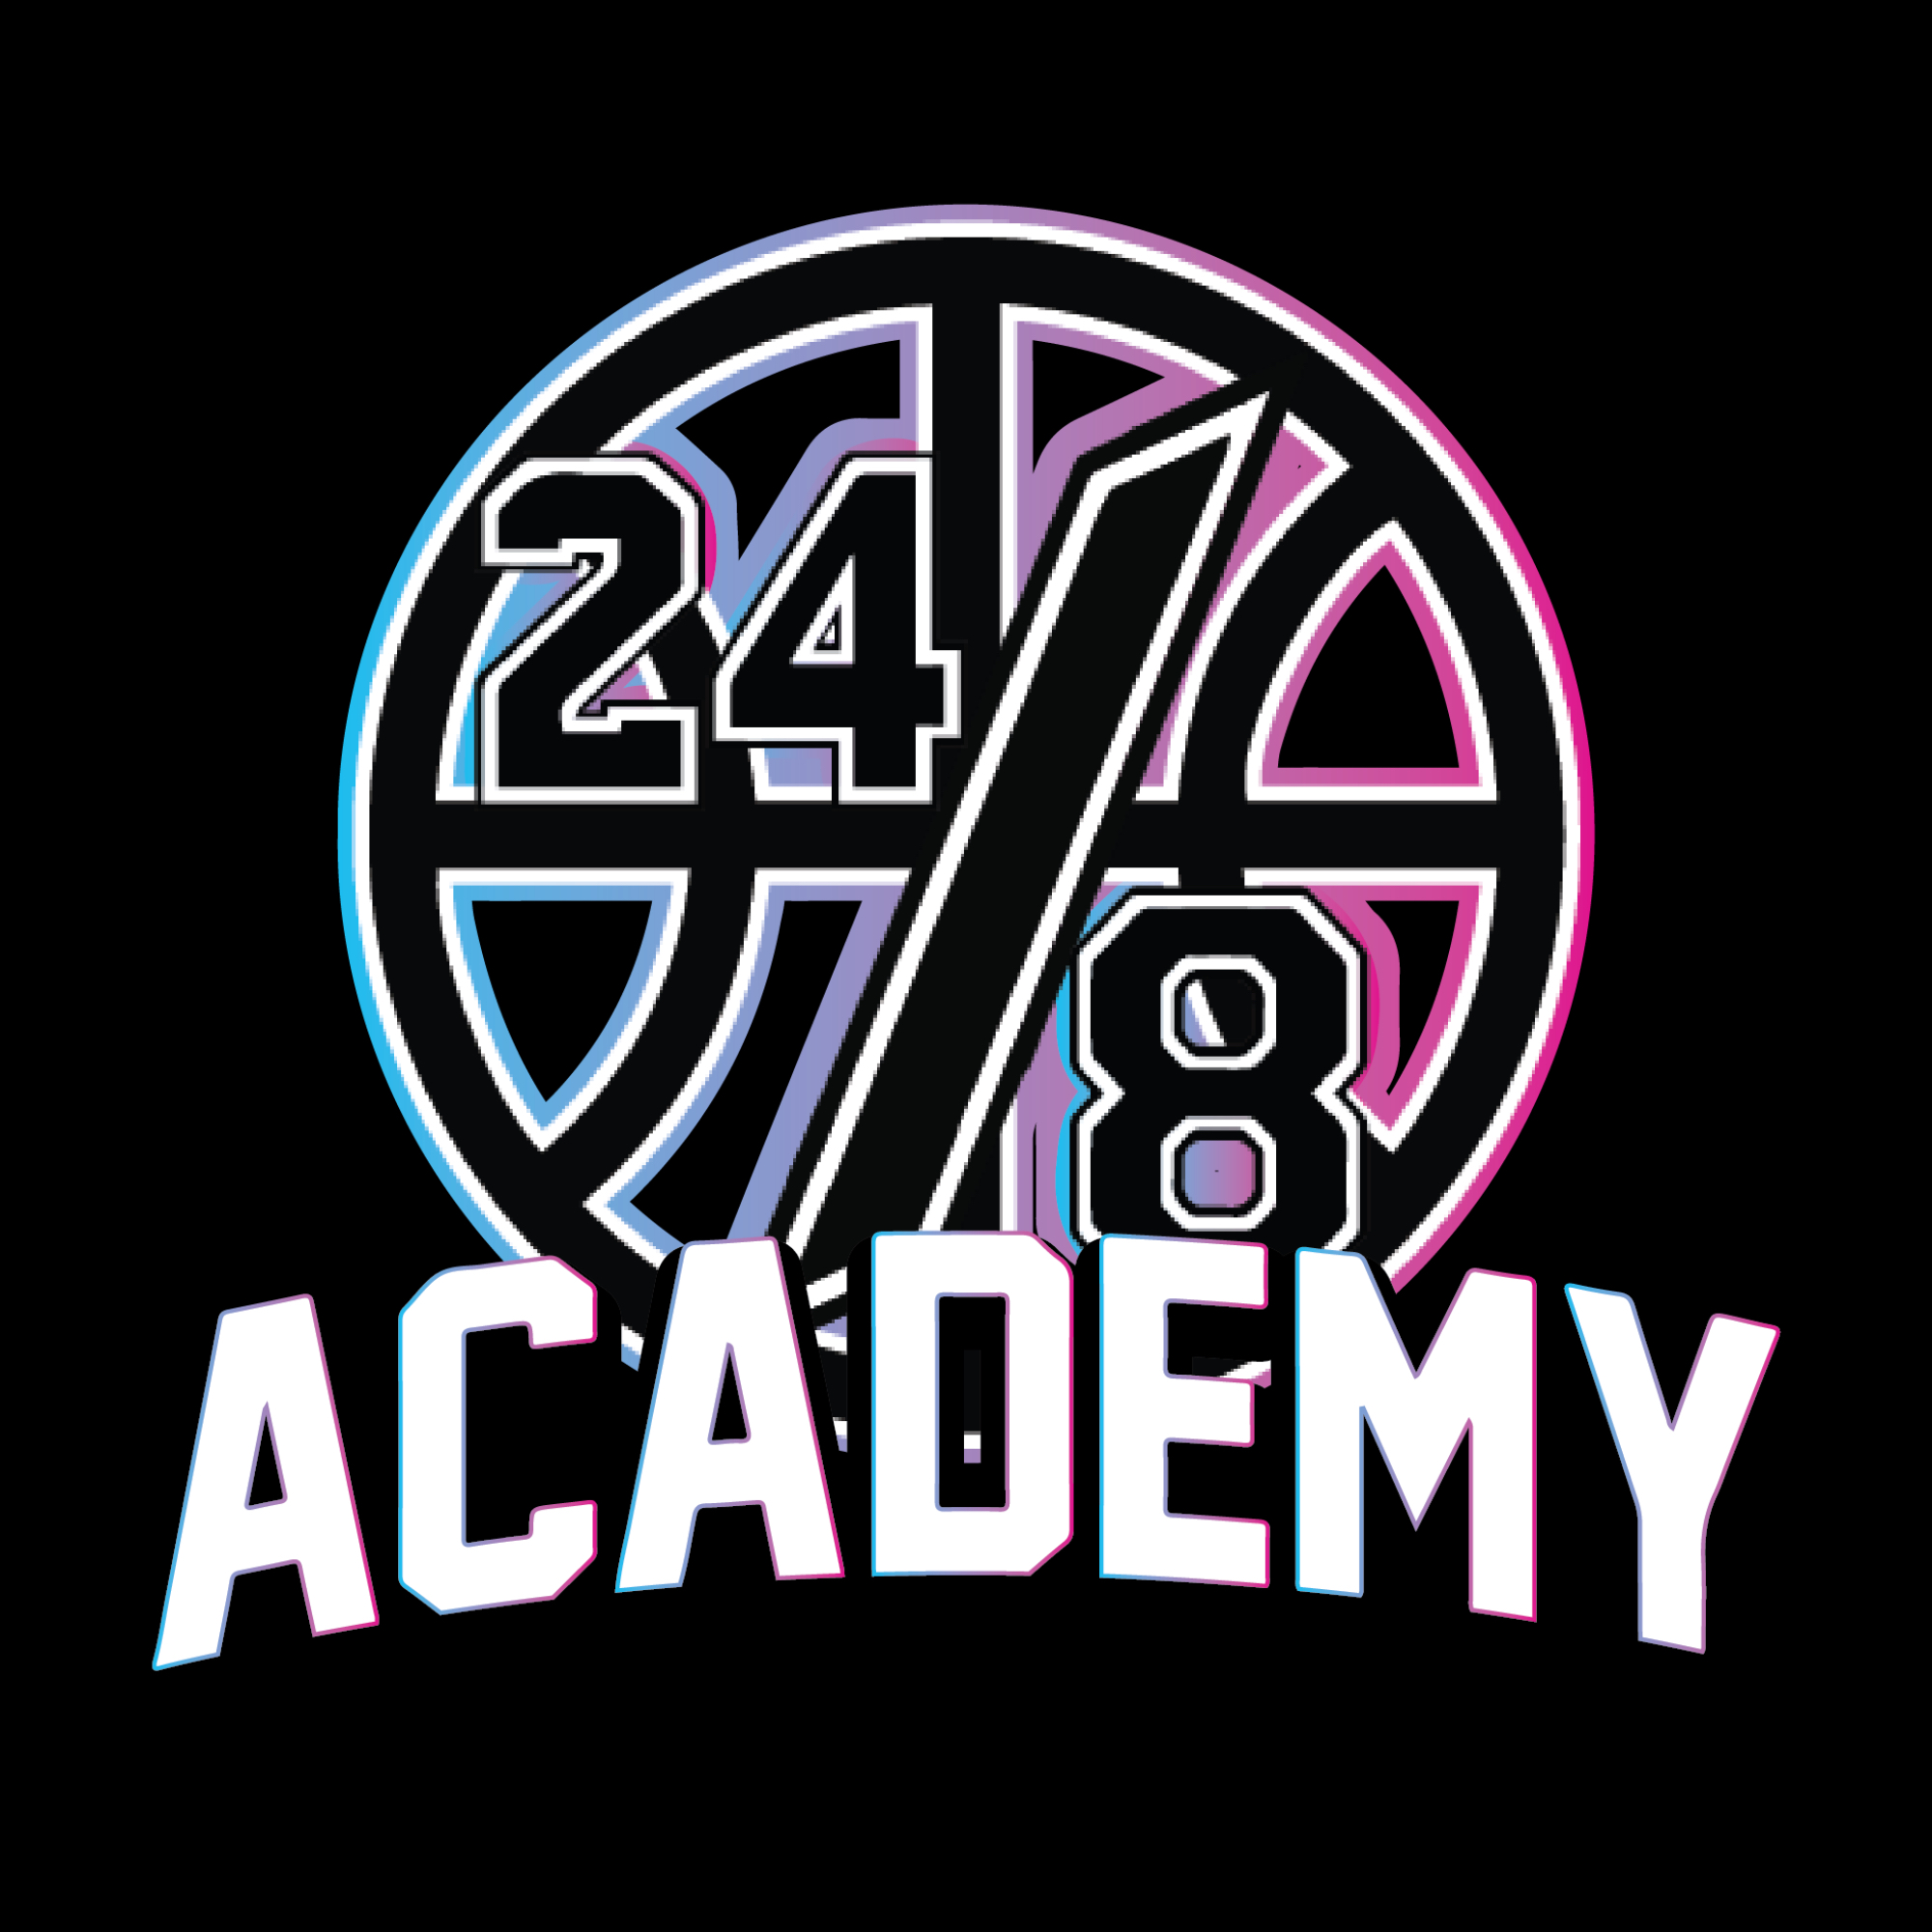 Organization logo for 24/8 Academy